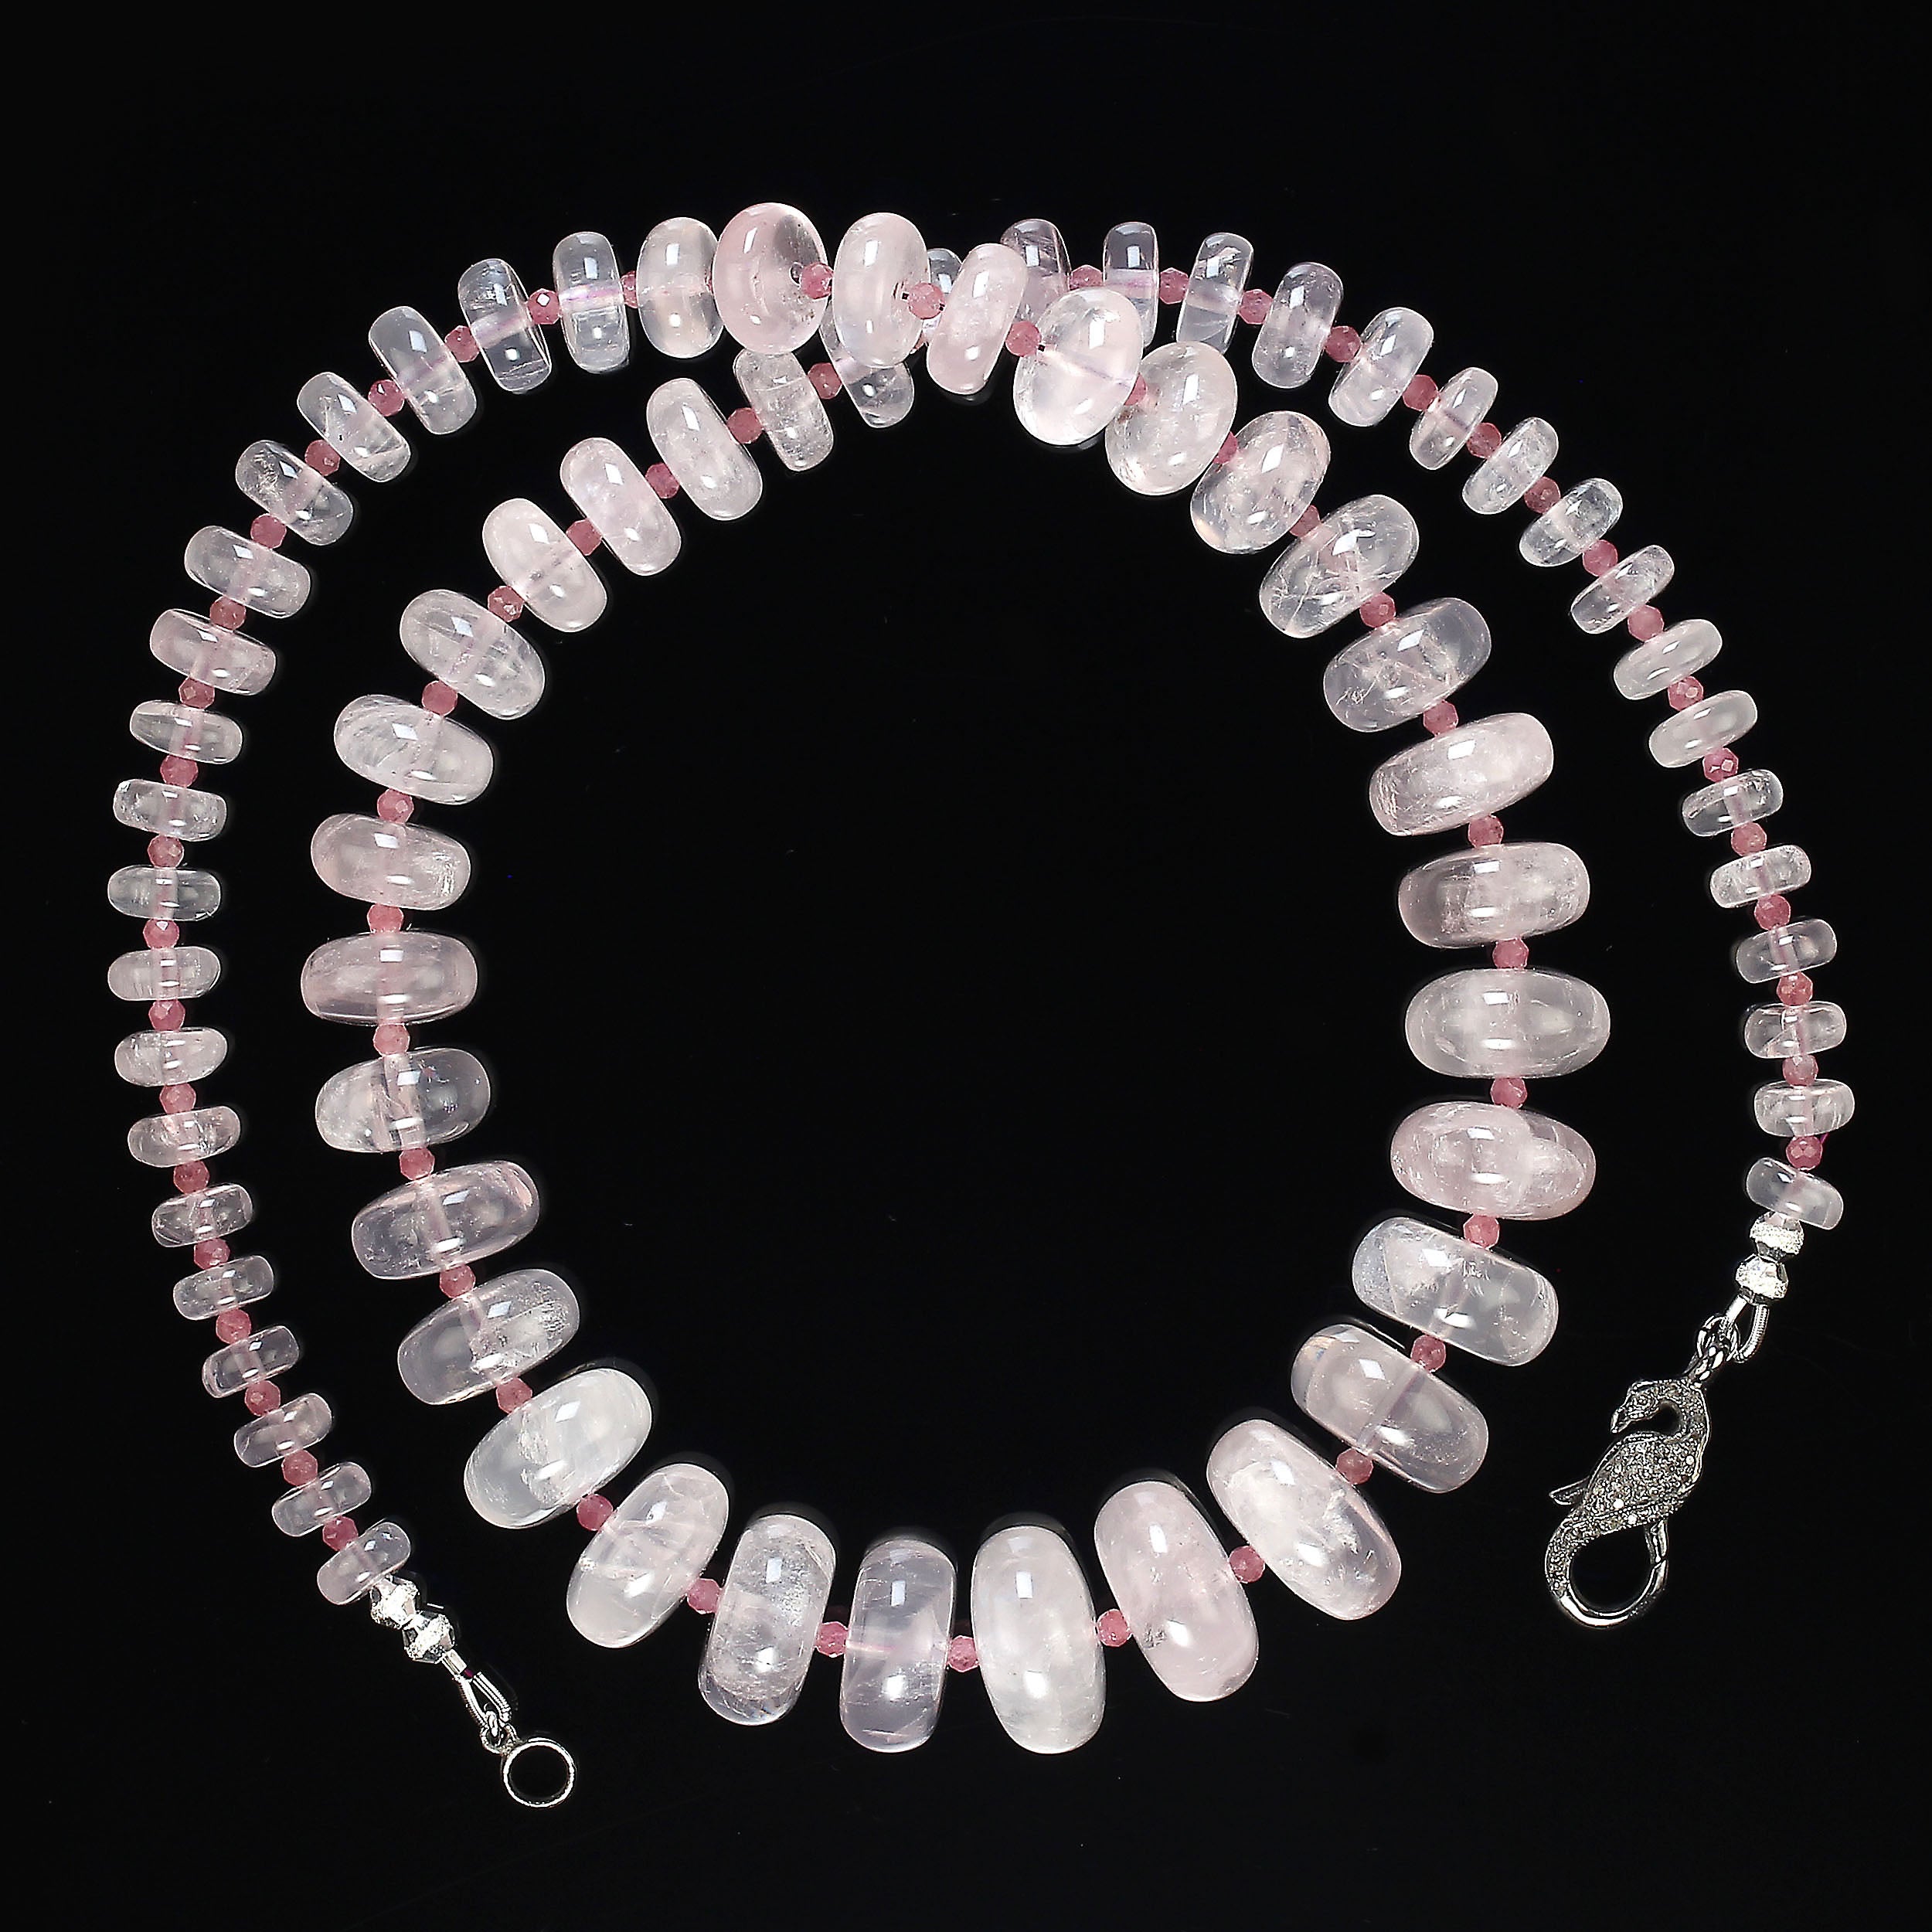 Joyeux cadeau de Saint-Valentin !
Magnifiques rondelles transparentes et lisses de quartz rose dans ce collier de 24 pouces.  Le quartz rose est rehaussé d'une tourmaline rose de 3 mm facettée et plus foncée. Ces quartz roses sont gradués de 8 à 18